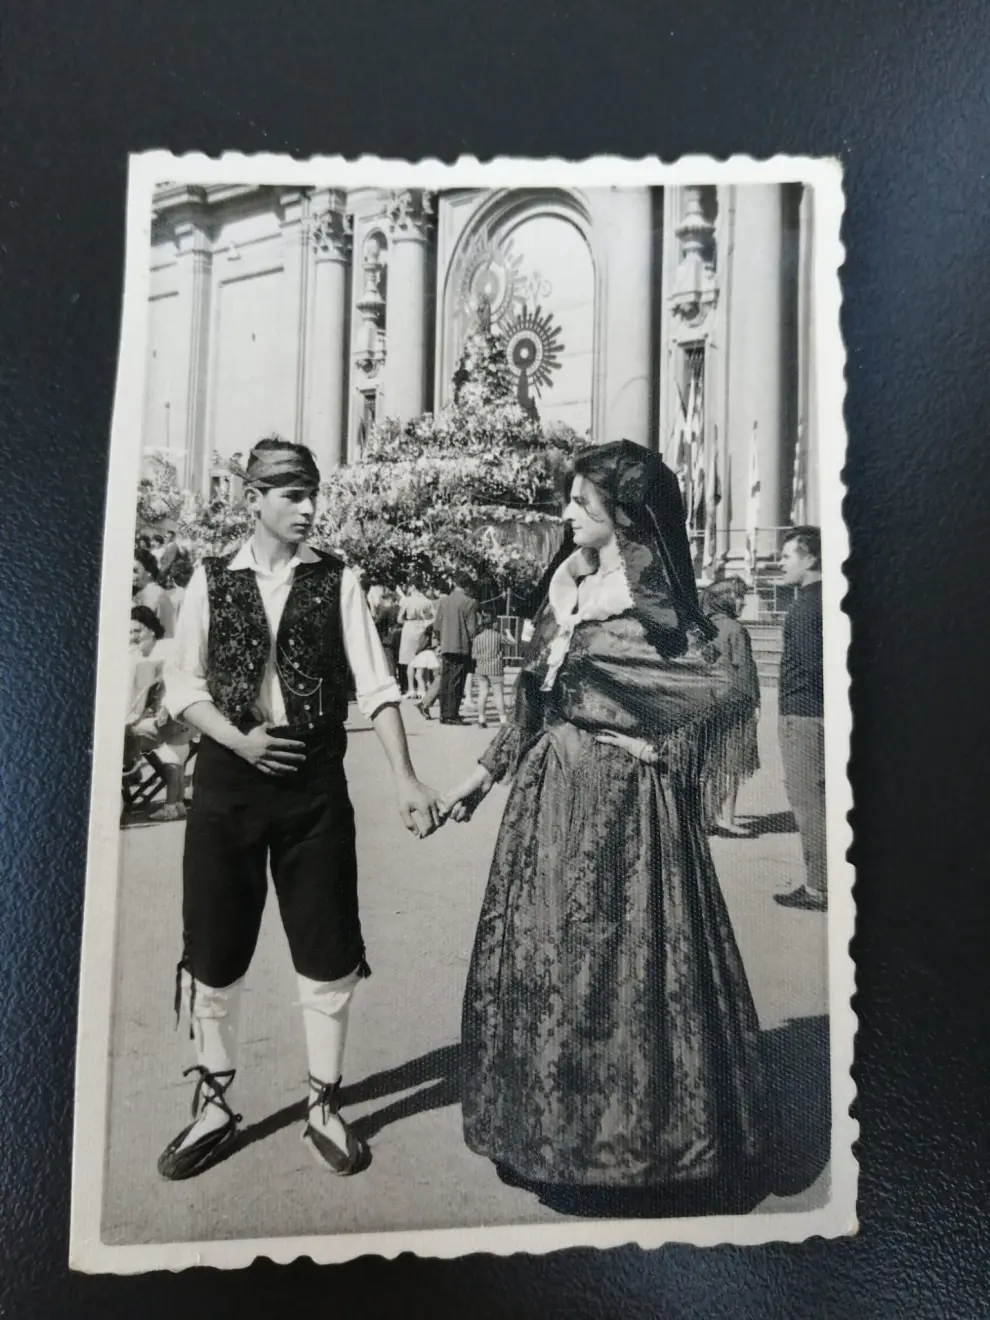 Fotos del álbum familiar de la ofrenda de flores de los Giménez Franco.